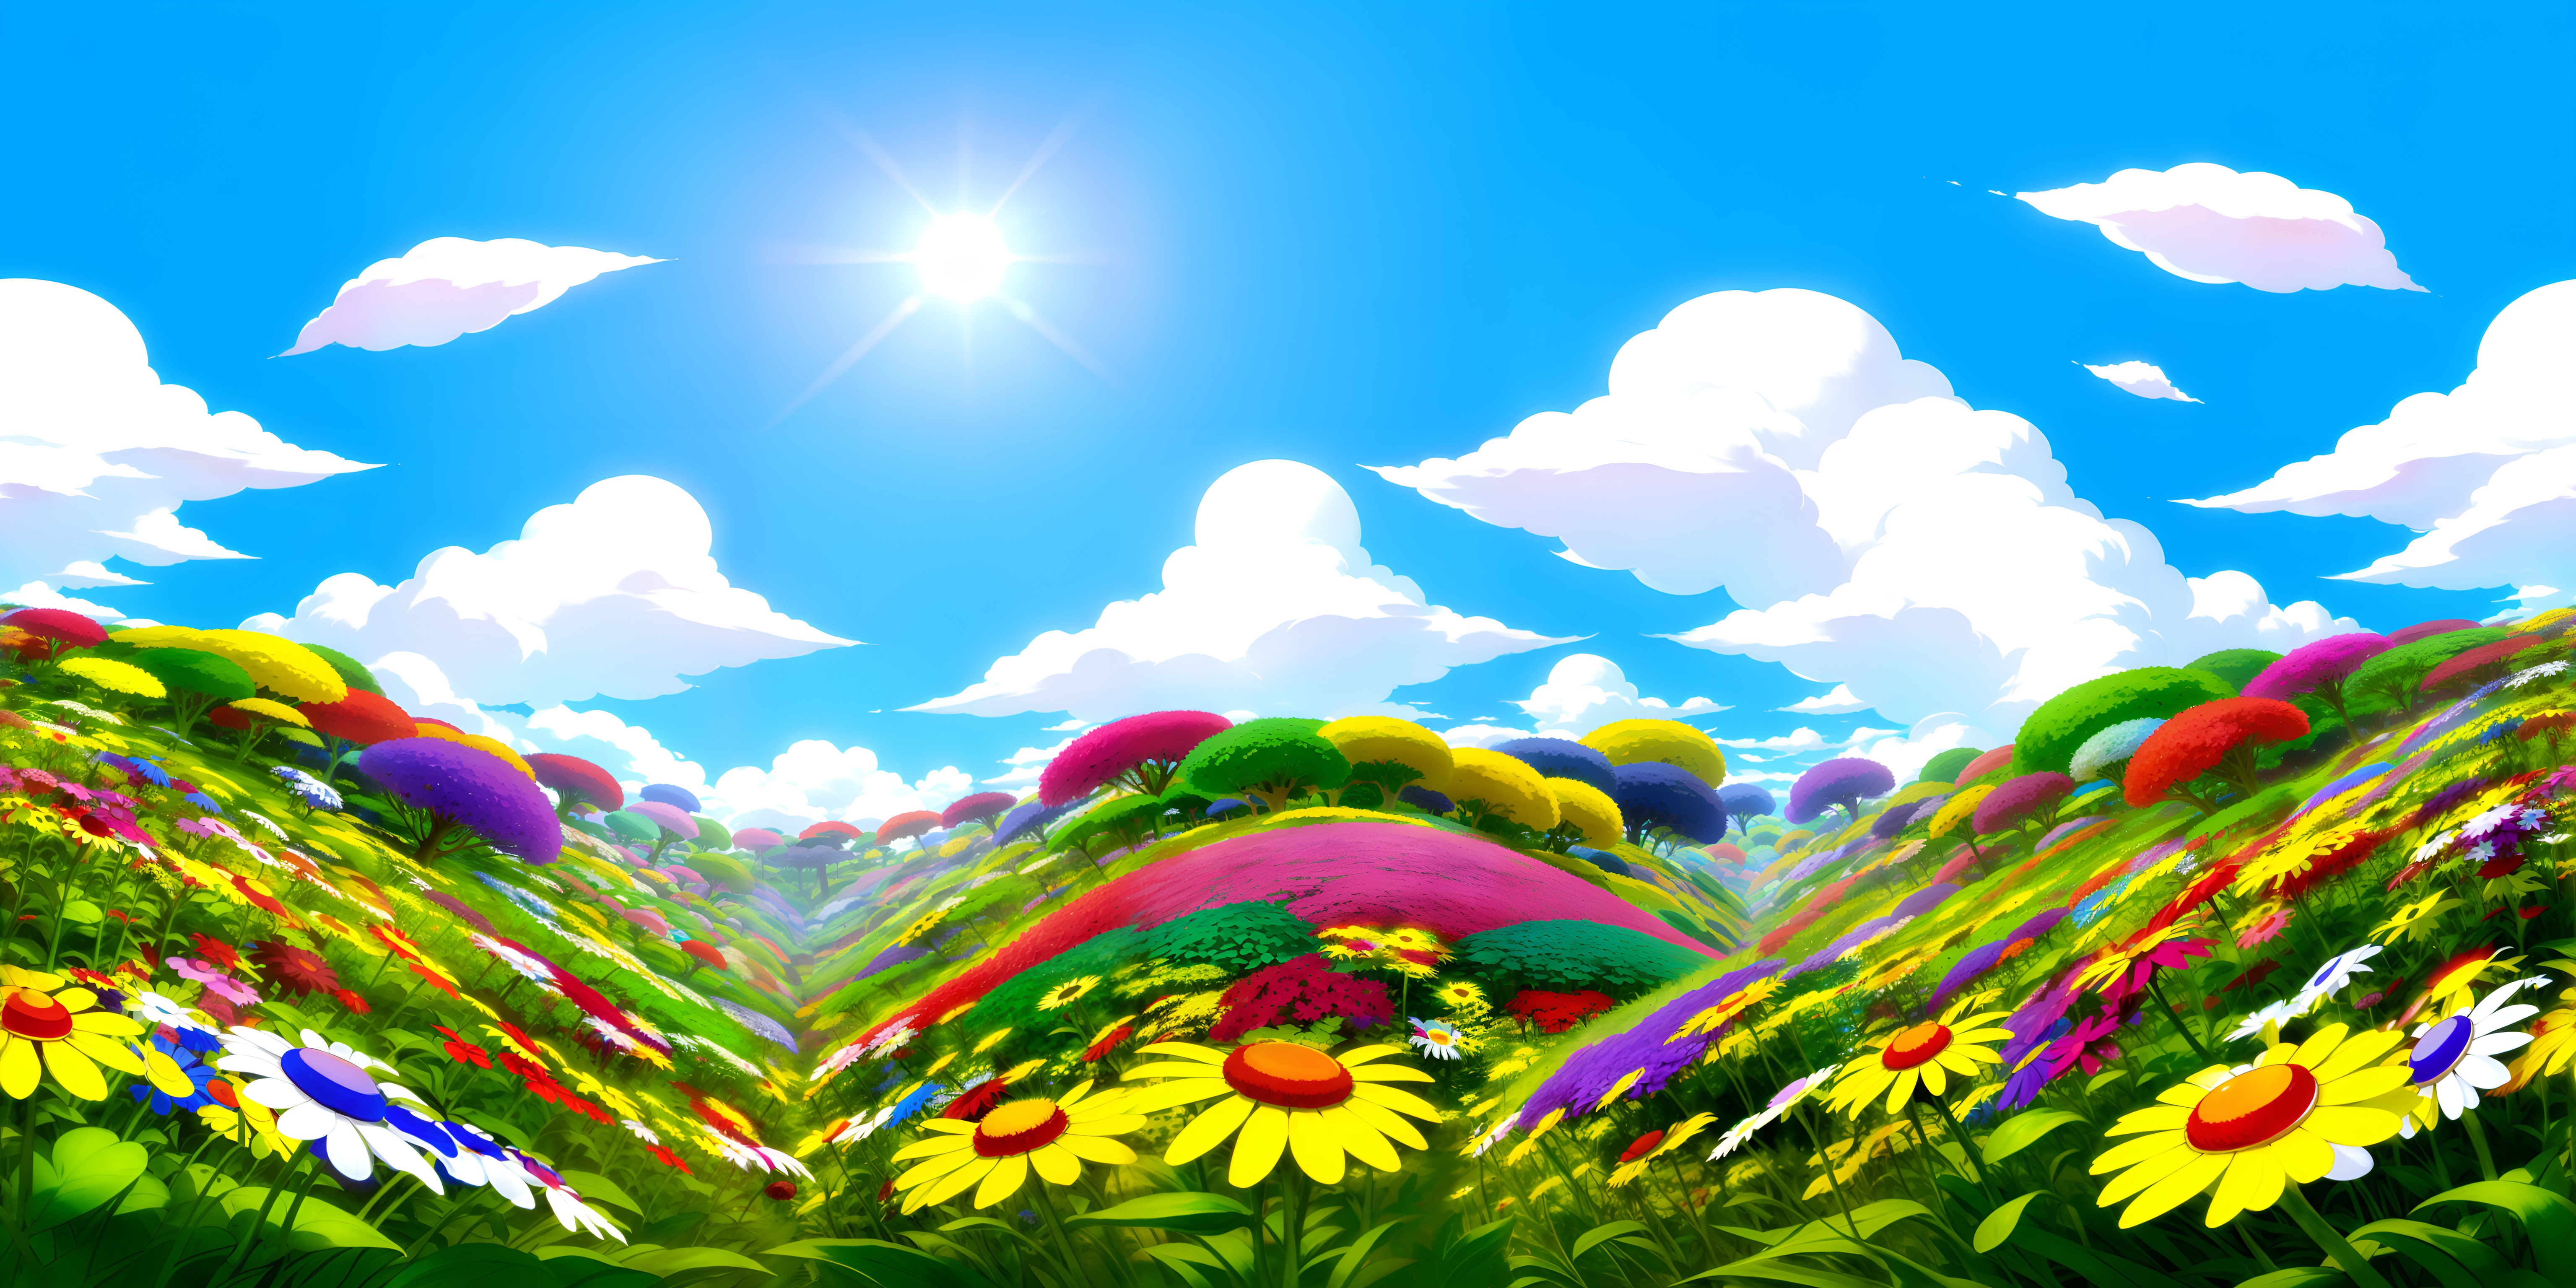 General 6144x3072 phong cảnh  bải biển VỊNH HẠ LONG PHONG CẢNH NHẬT BẢN SÁNG TẠO HOA ANH ĐÀO NHẬT BẢN AI art digital art wide screen ultrawide sky clouds flowers trees nature Sun sunlight